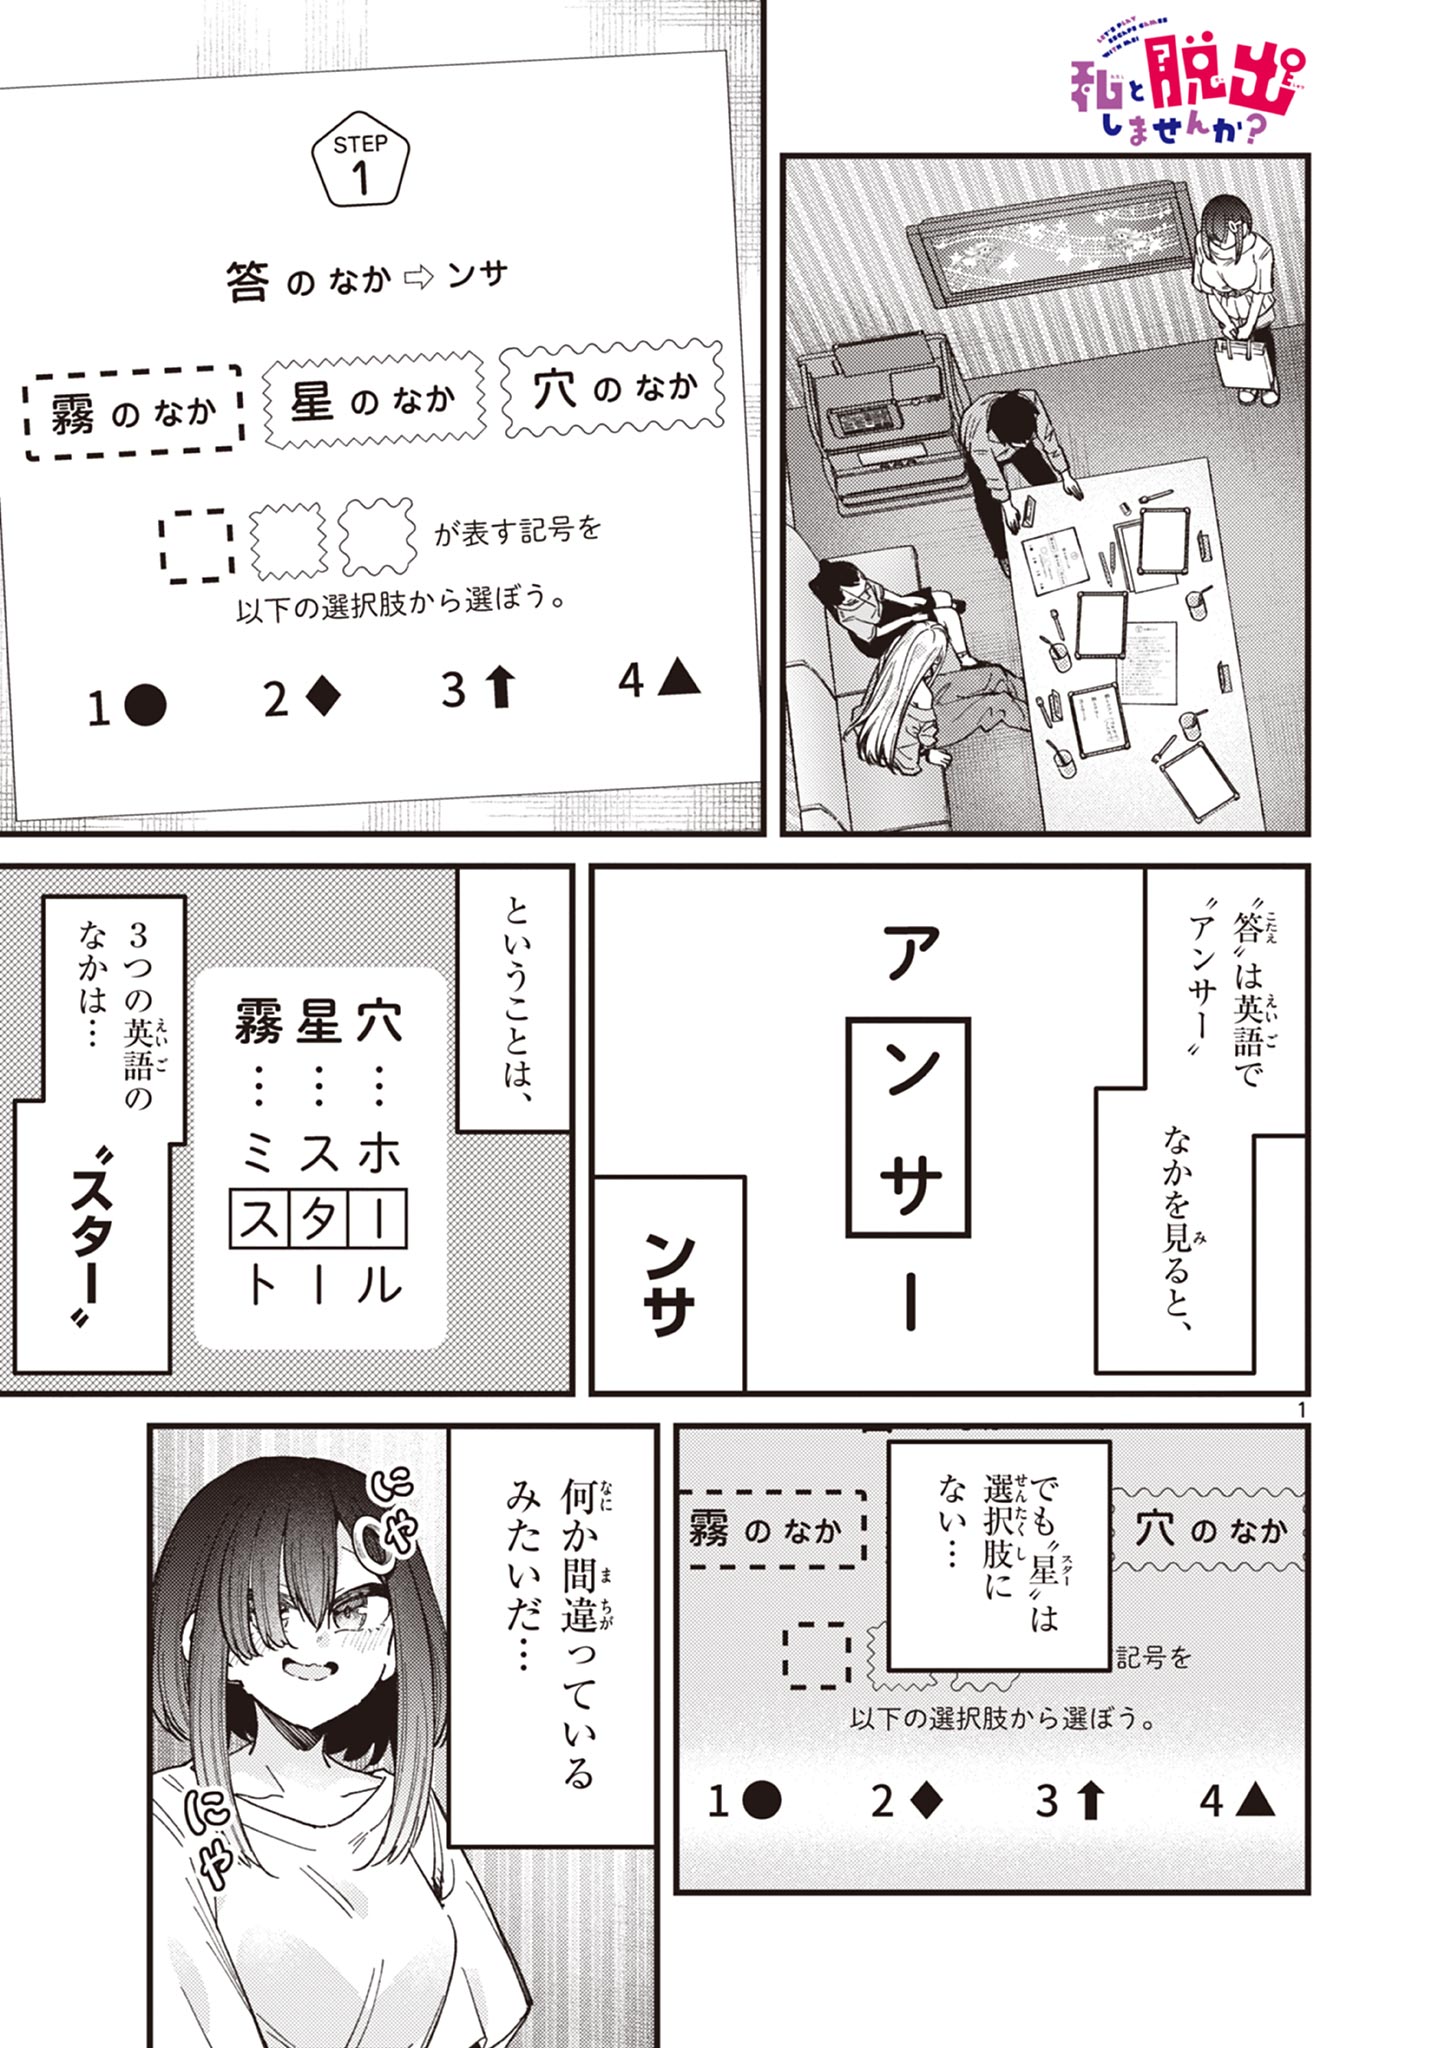 Watashi to Dasshutsu shimasen ka? - Chapter 46 - Page 1